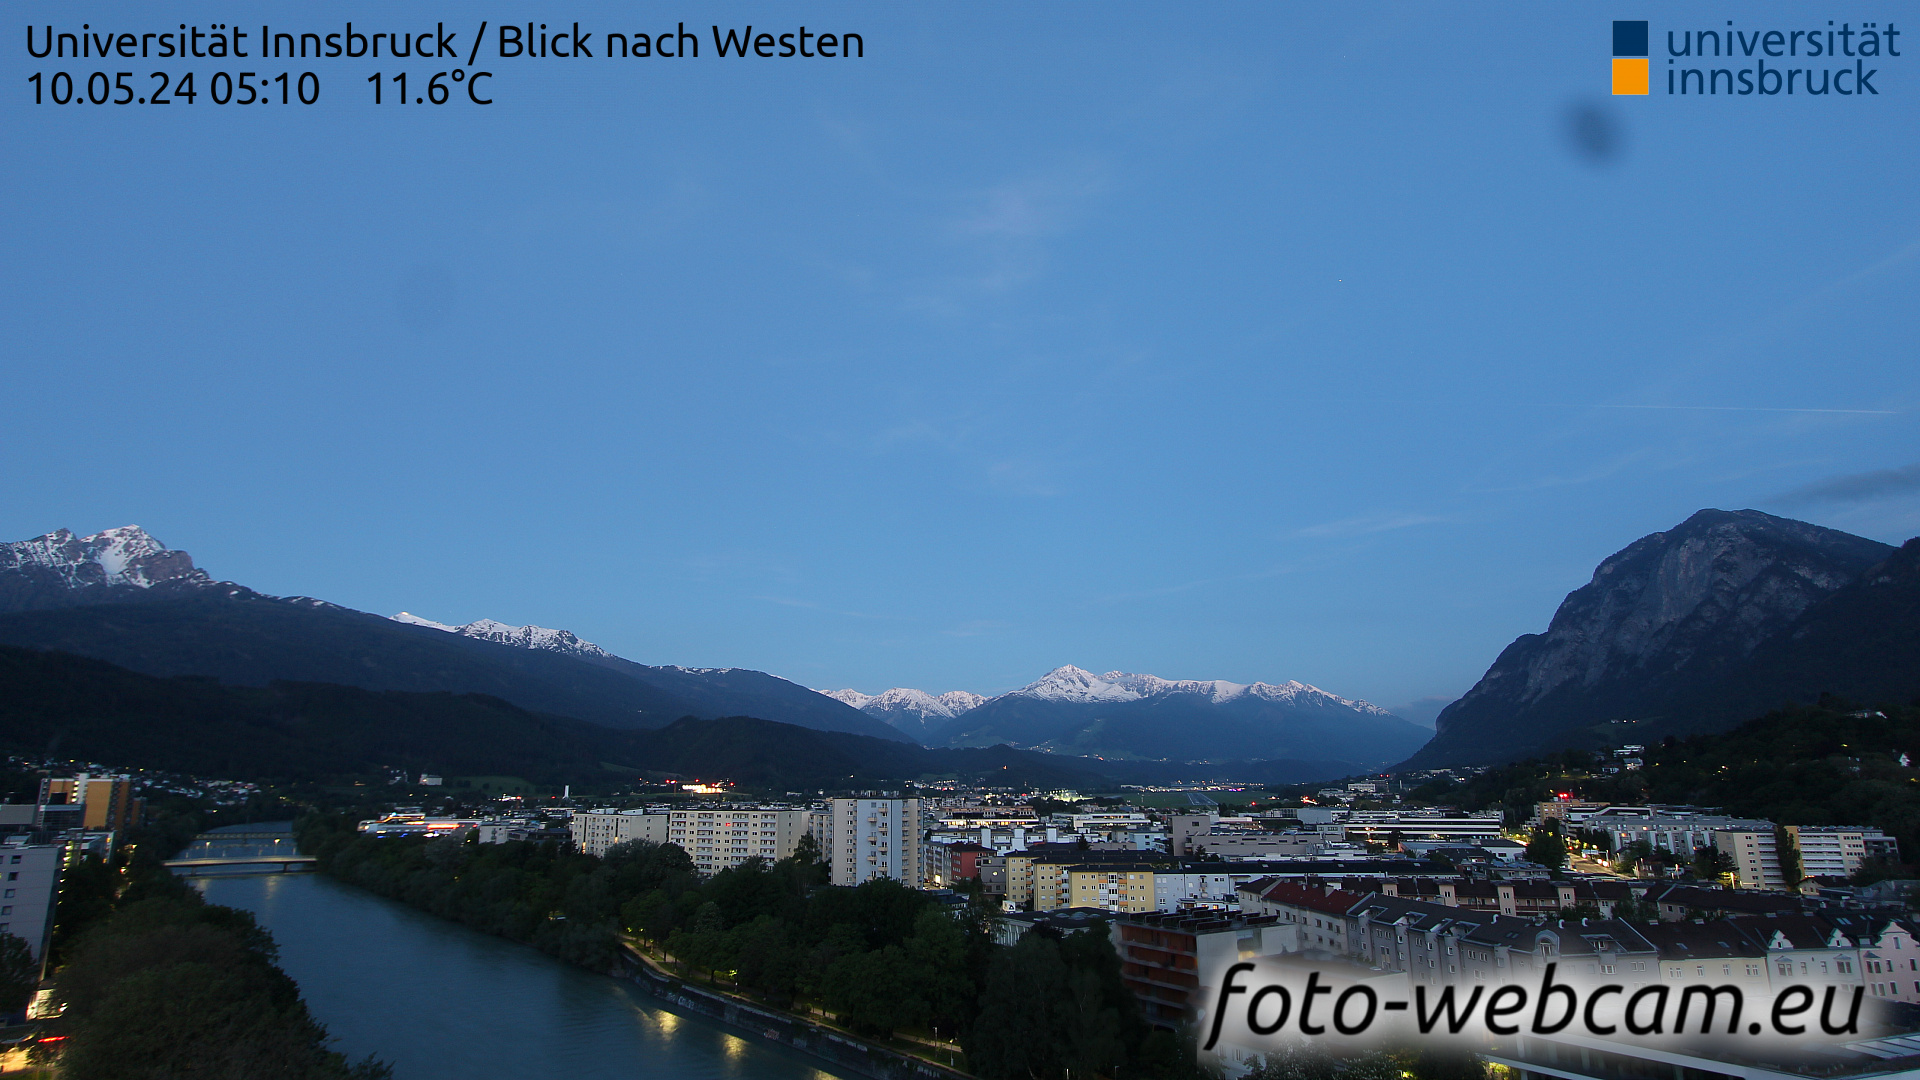 Innsbruck Di. 05:17